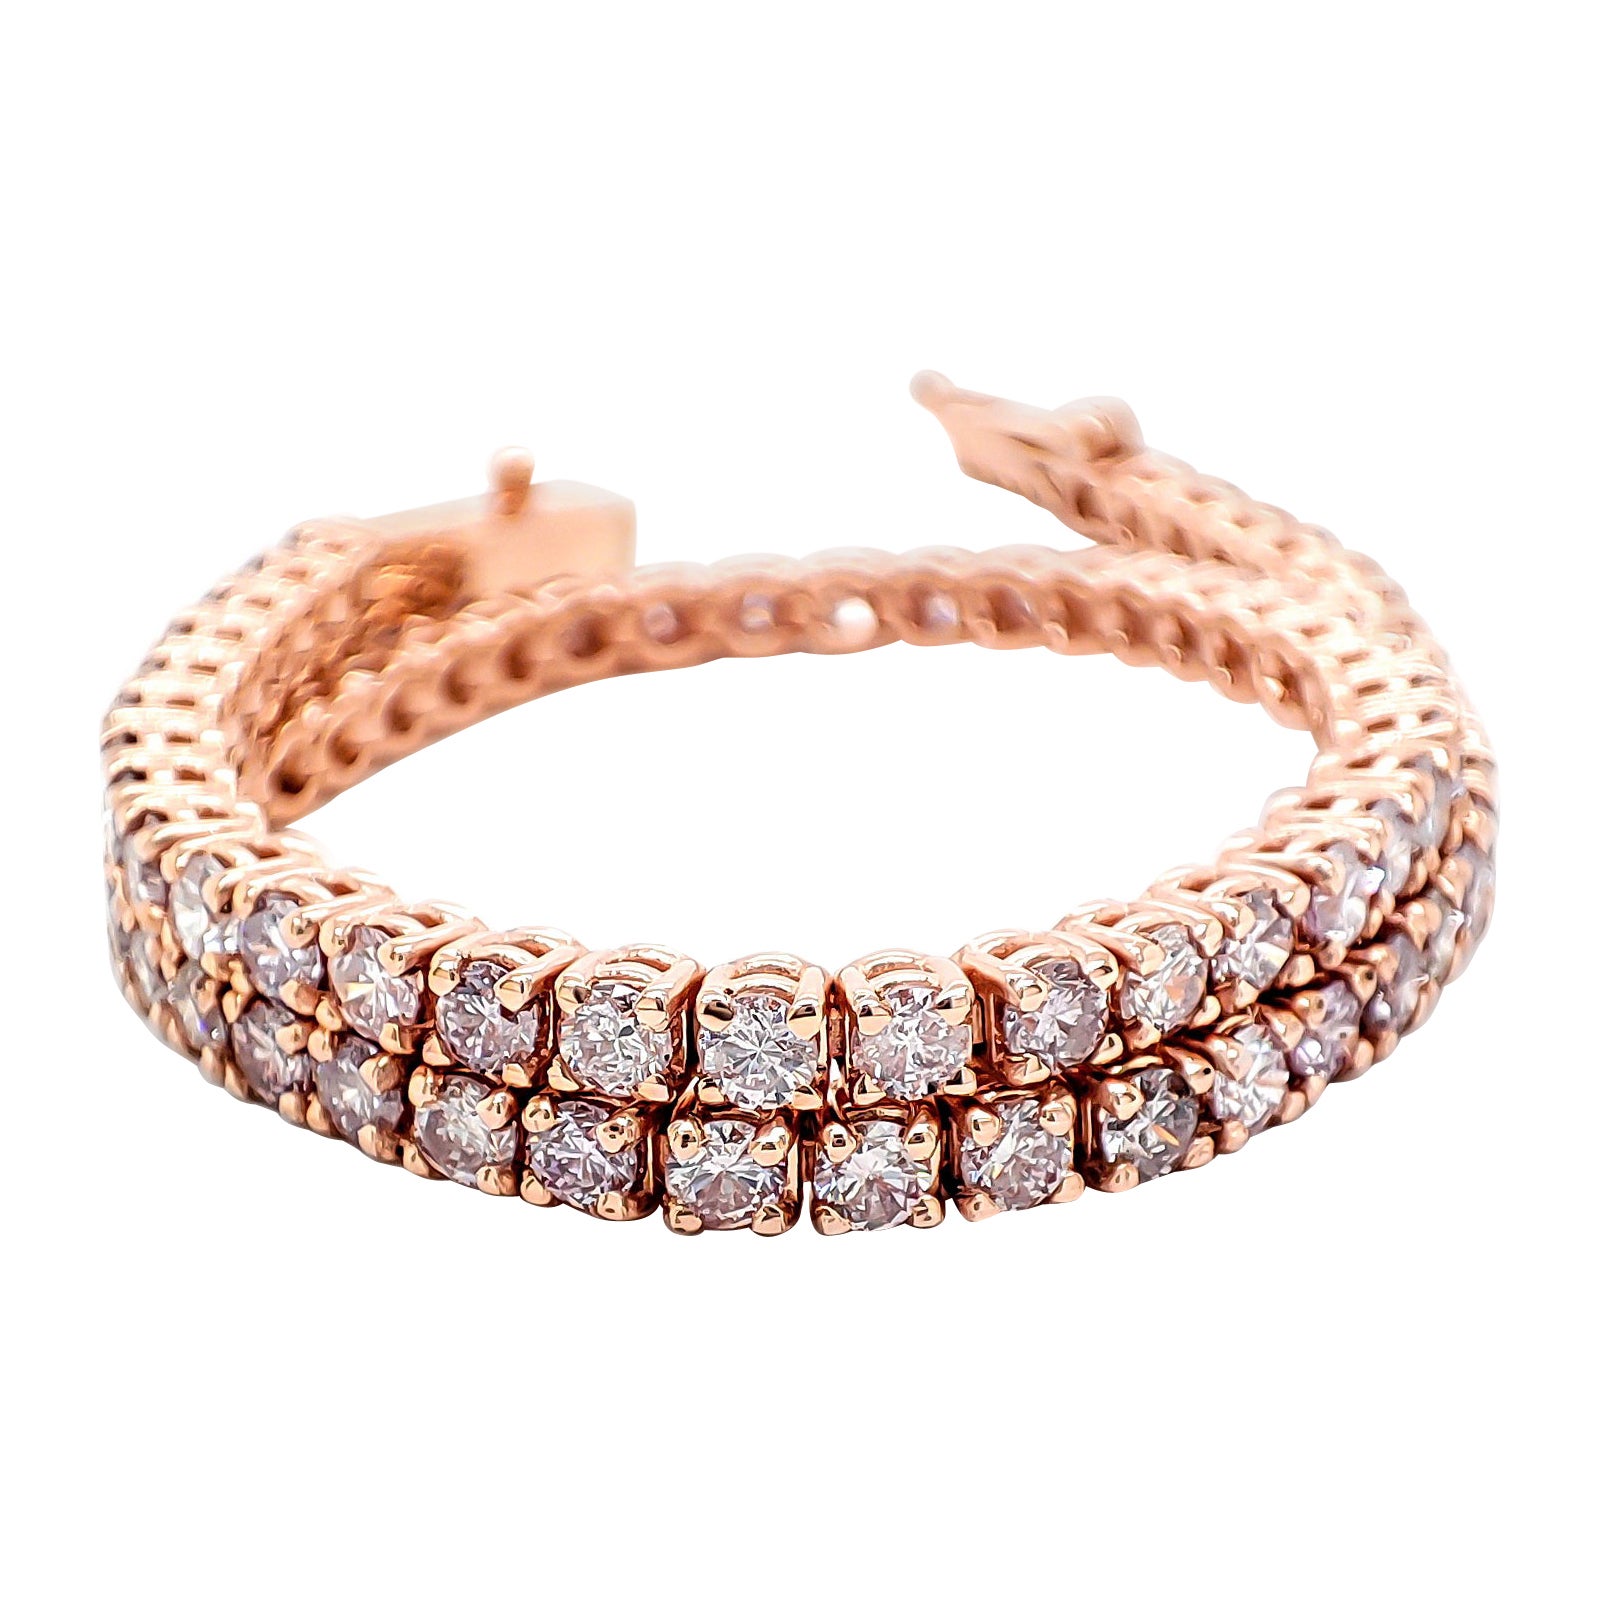  NO RESERVE - IGI 3.45 Carat Natural Round Fancy Pink Diamonds 14K Gold Bracelet For Sale